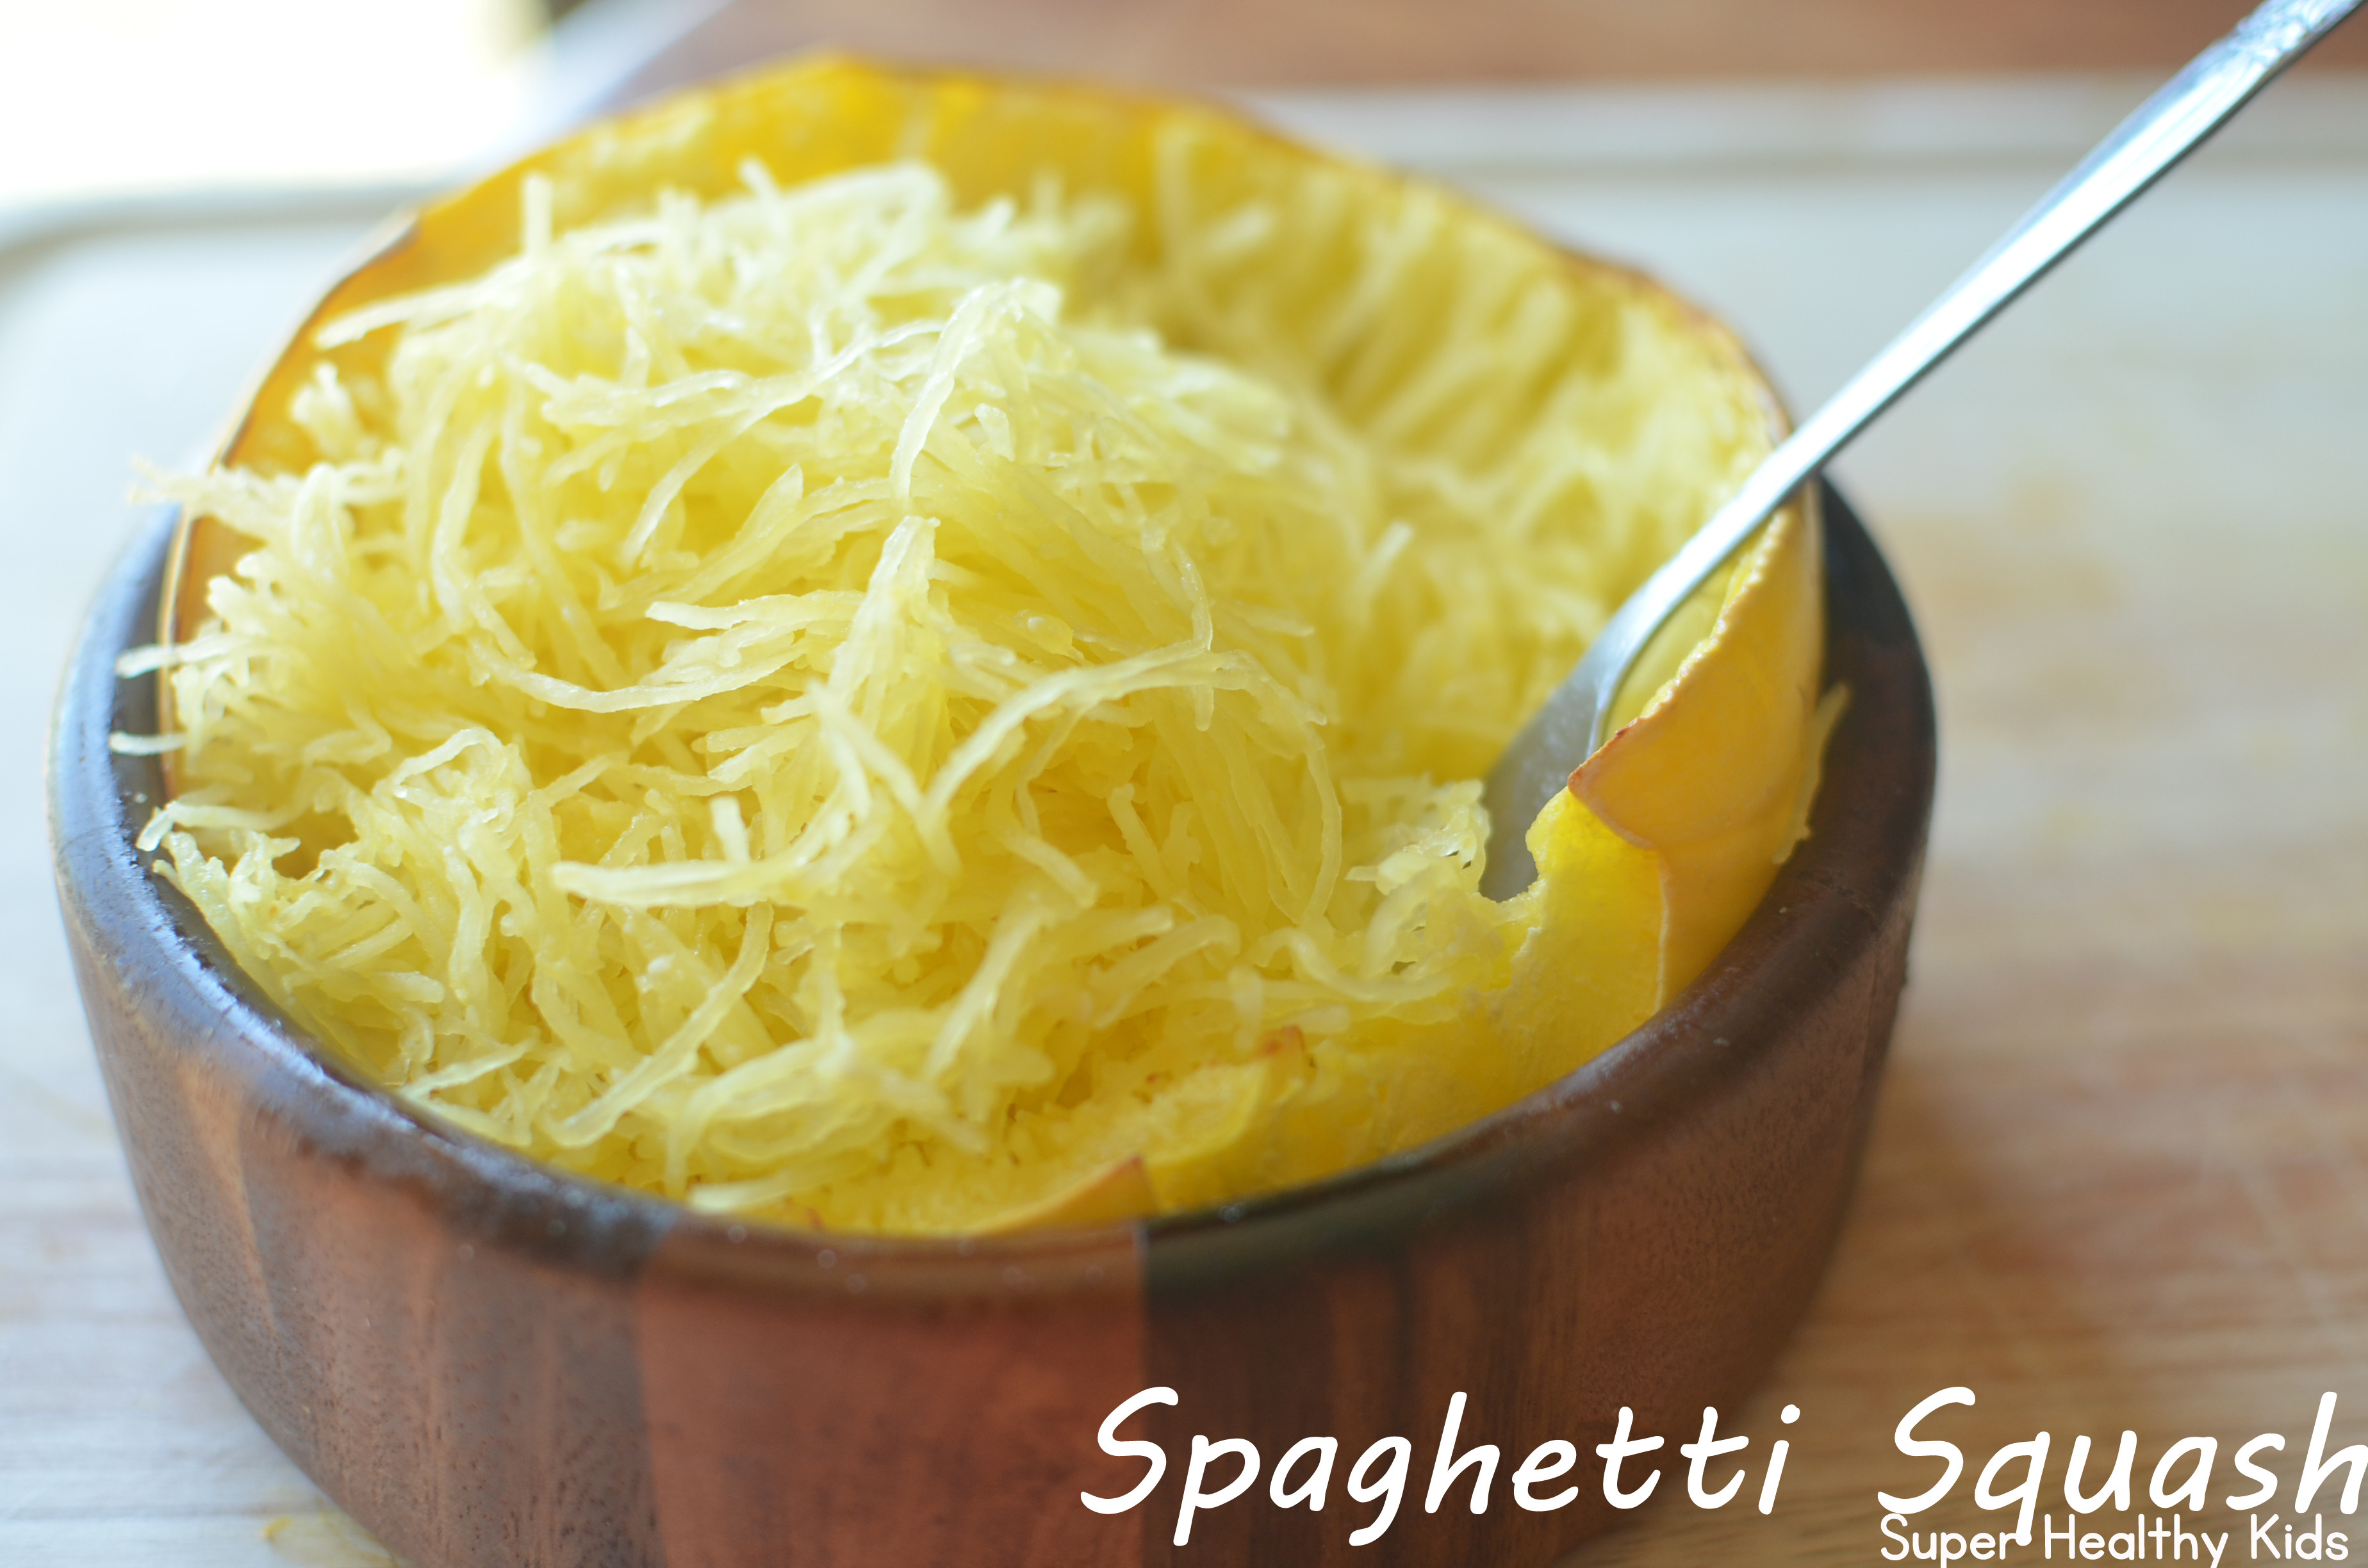 Spaghetti Squash Healthy
 Super Simple Spaghetti Squash Recipe